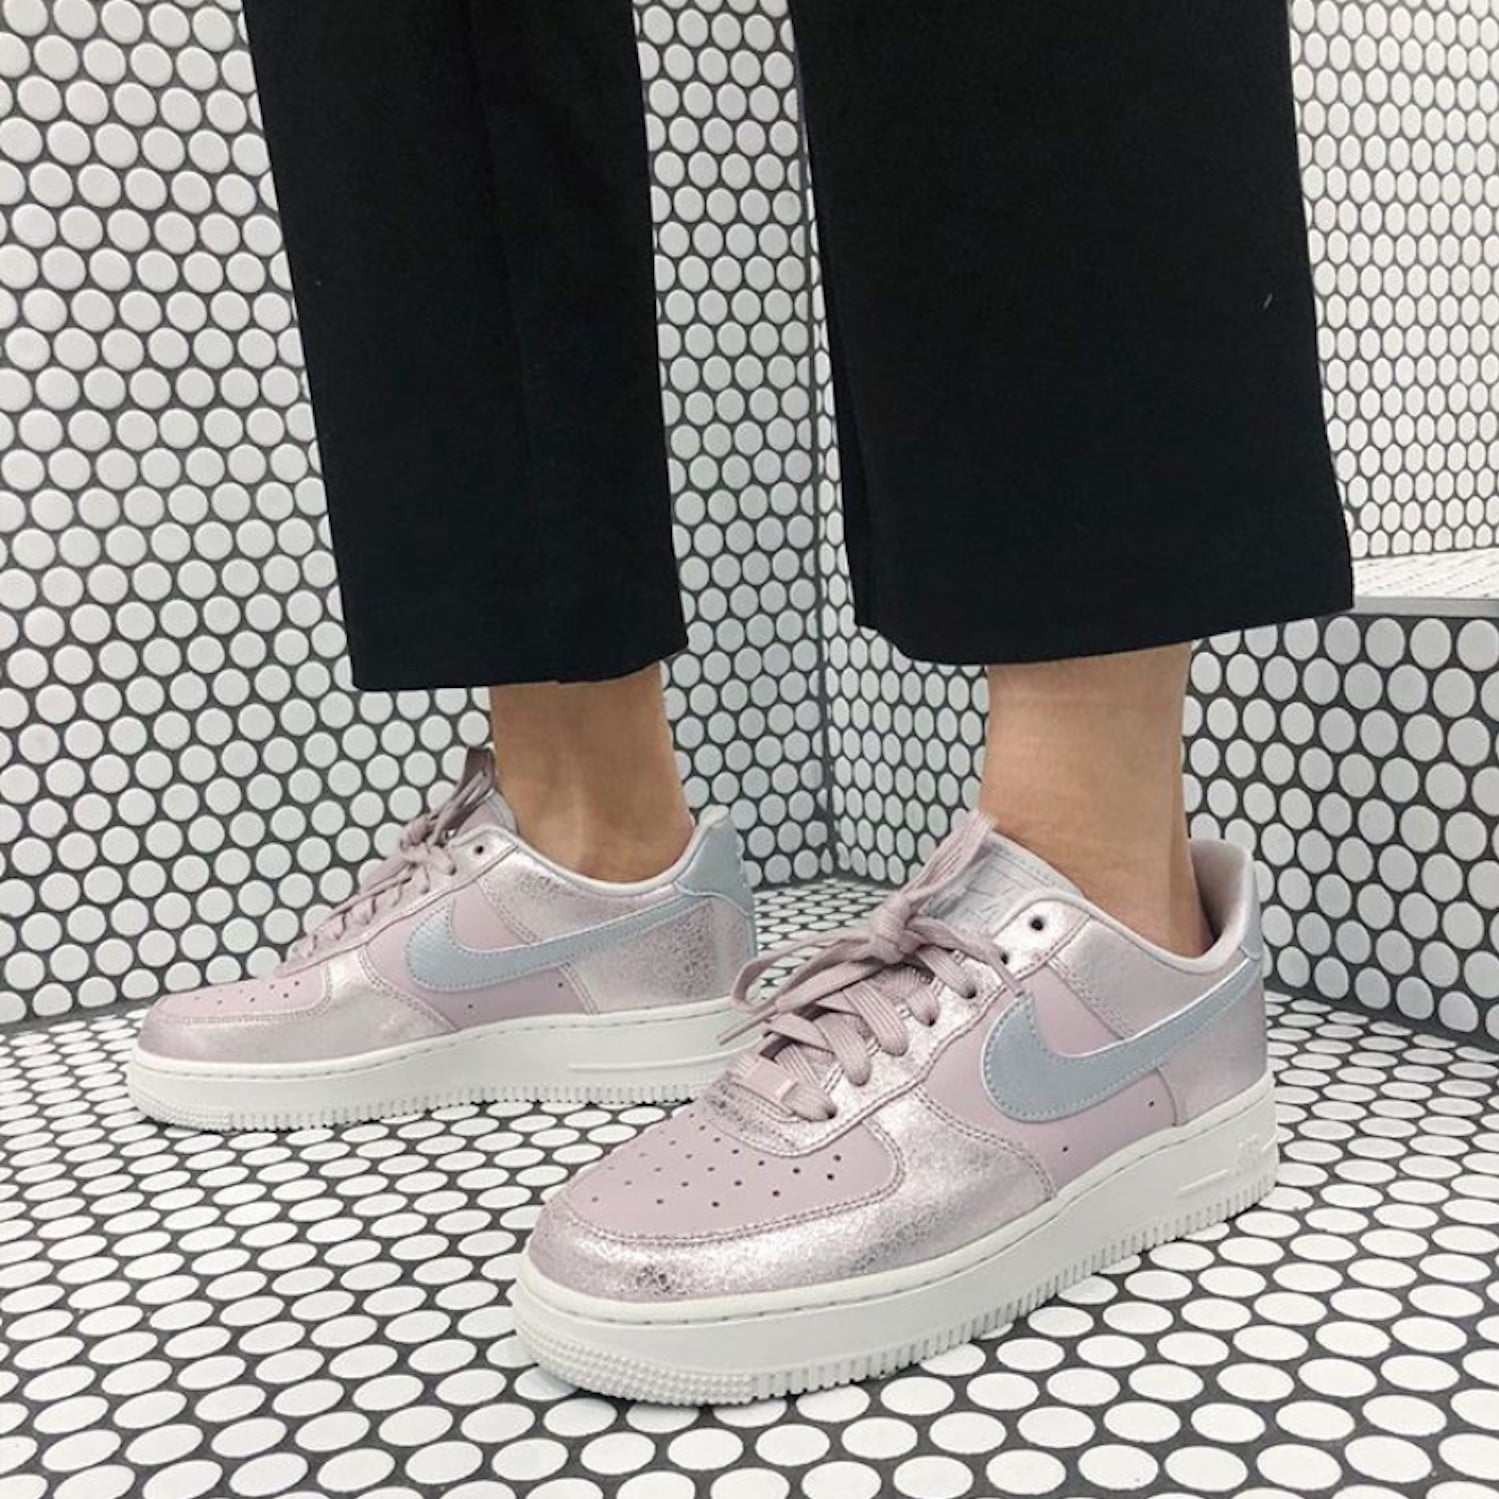 Pink Nike Air Force 1 Sneakers 